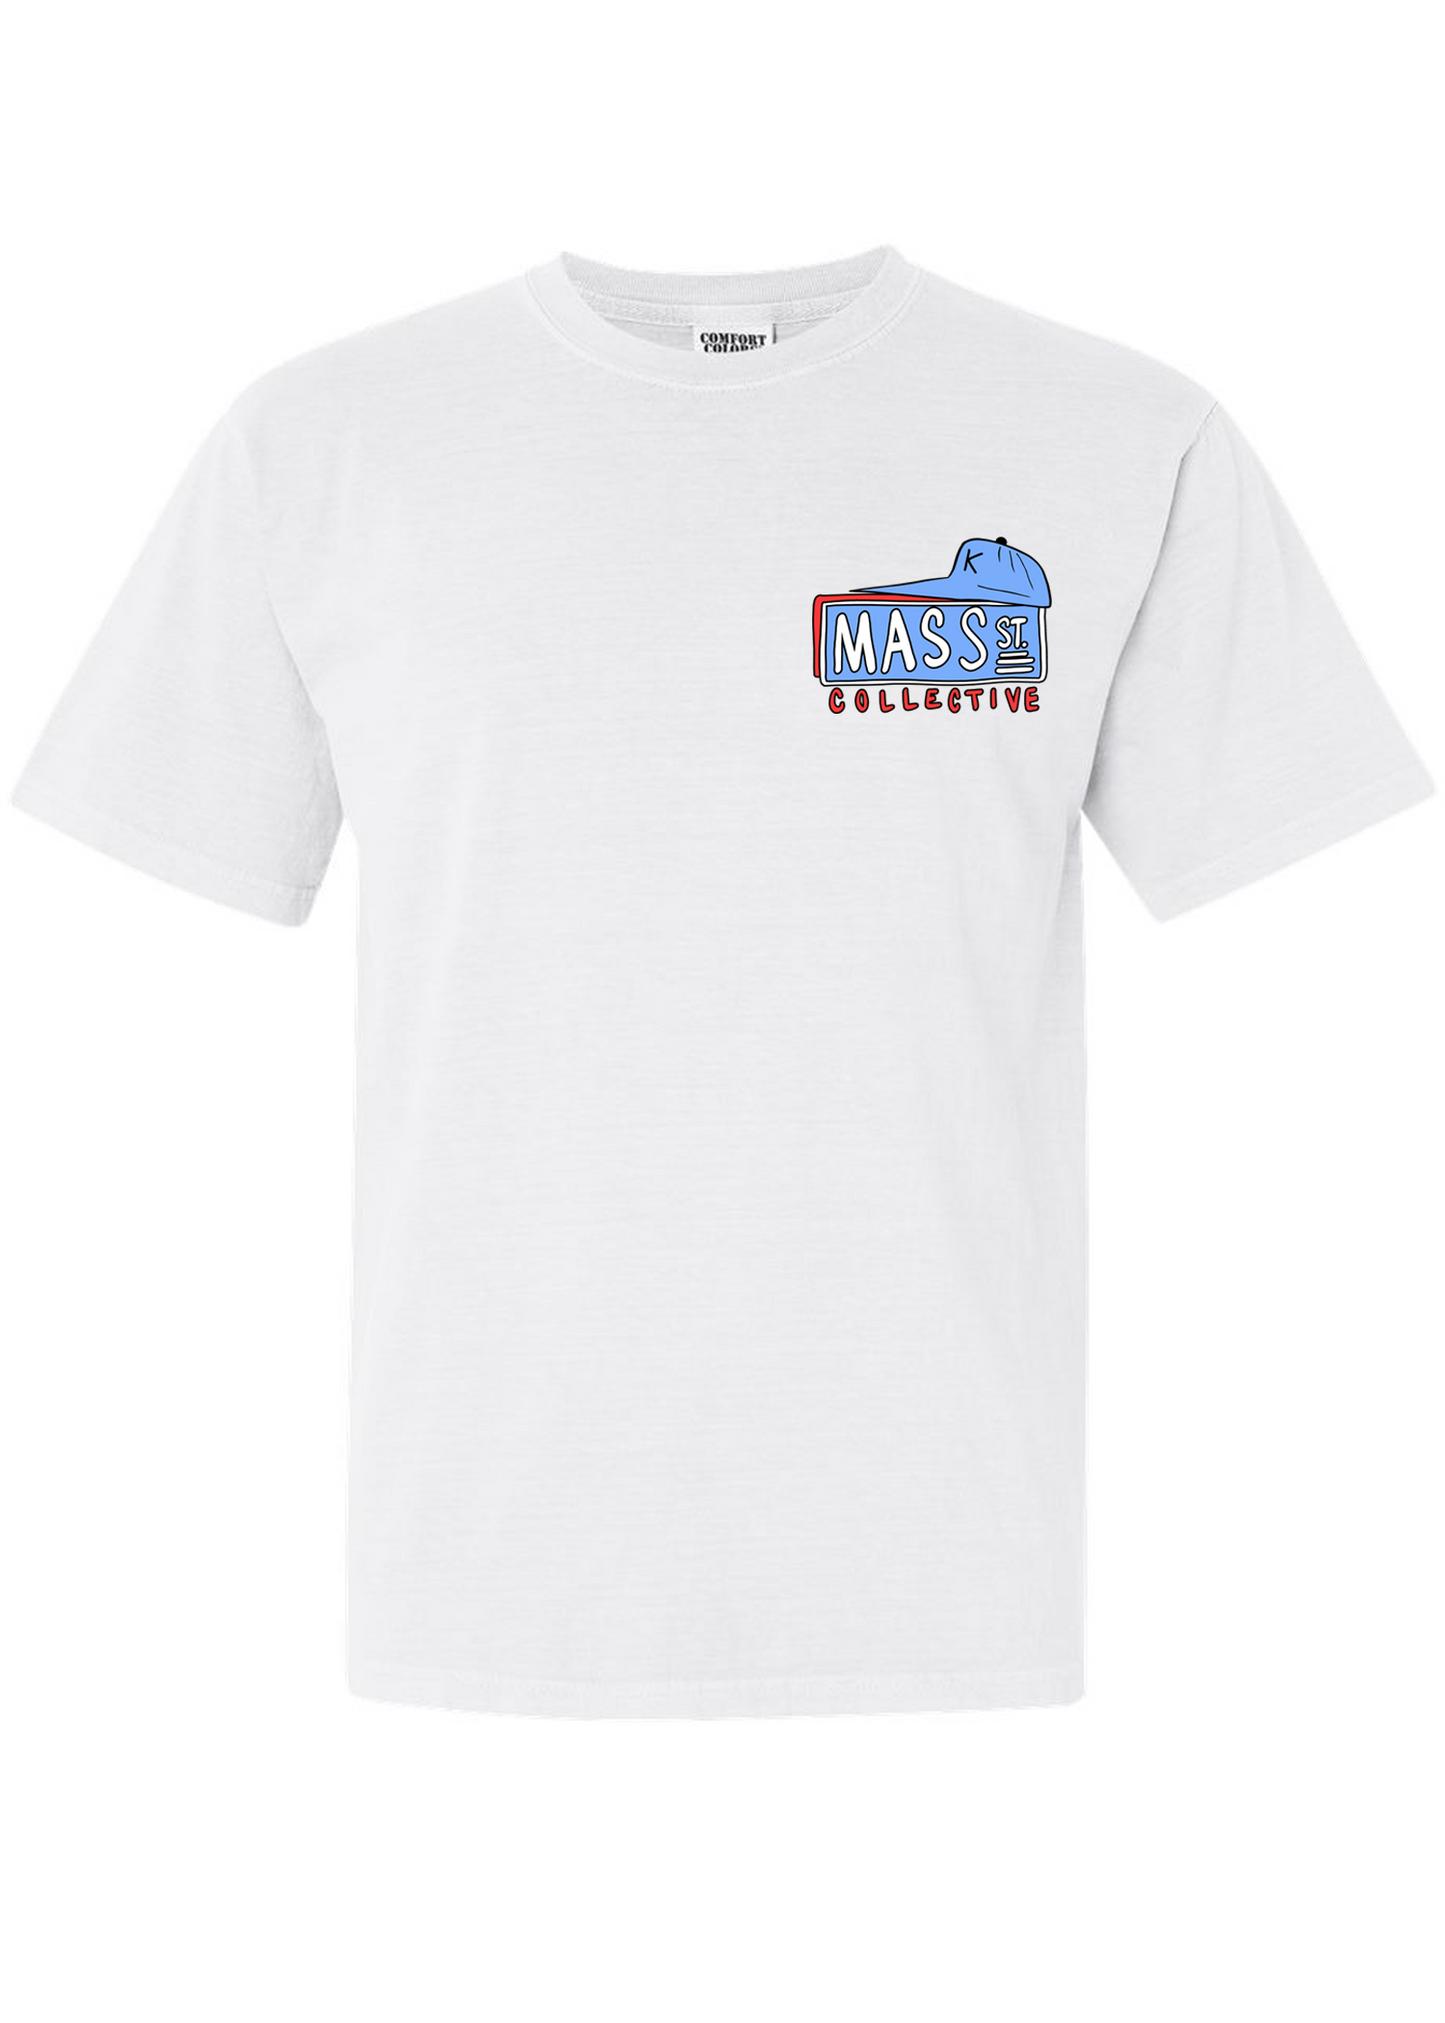 Mass St. Collective x Poppyhawk Basketball T-shirt